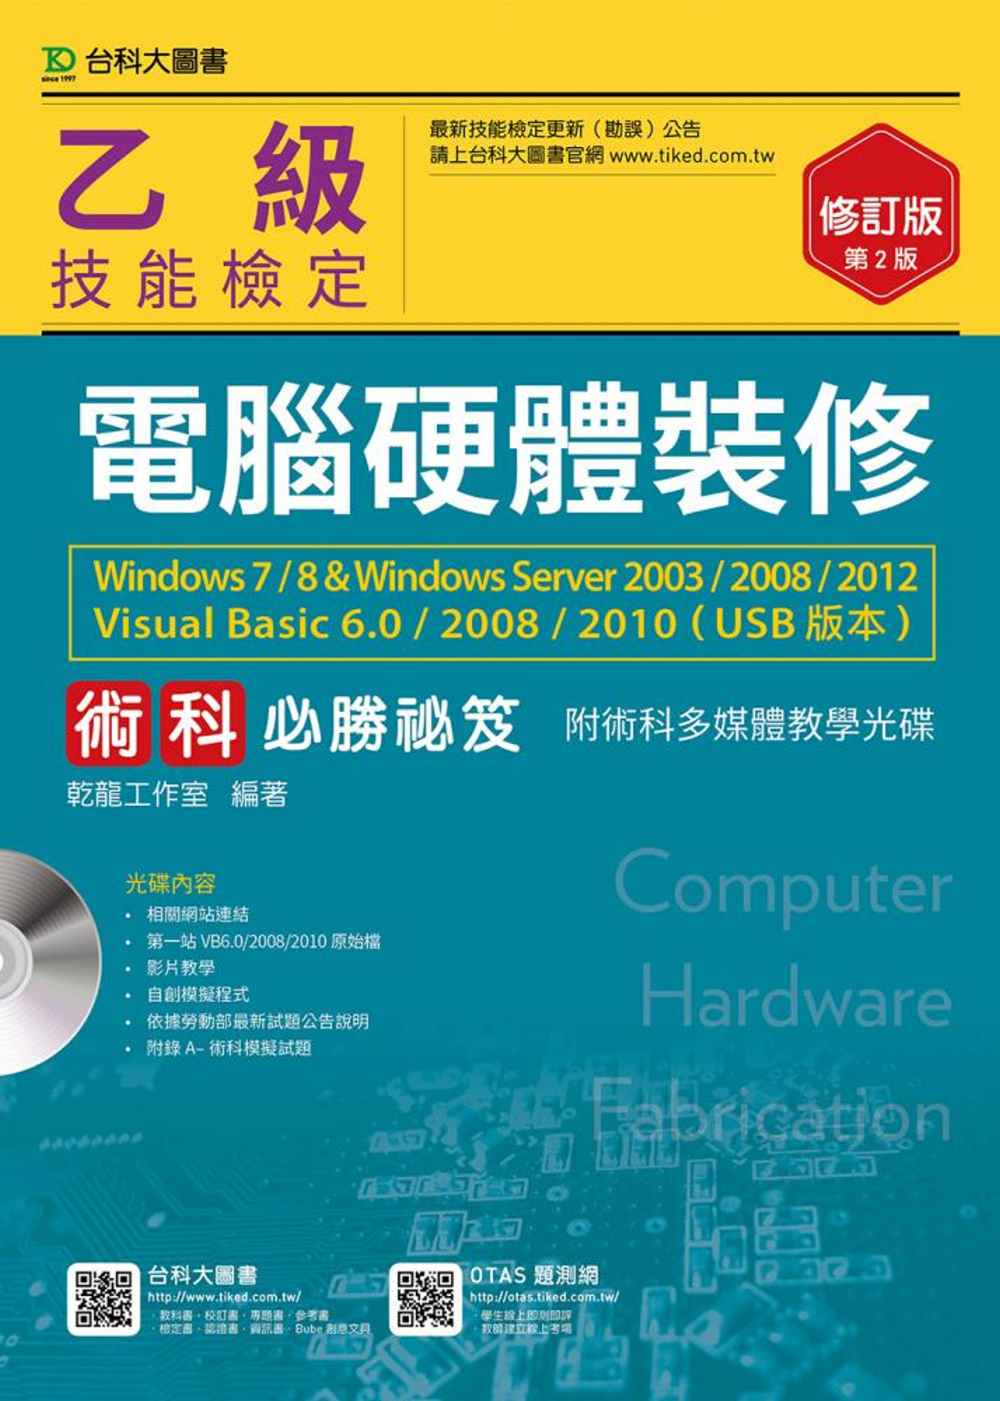 乙級電腦硬體裝修術科必勝秘笈Windows 7 / 8 & Windows Server 2003 / 2008 / 2012 Visual Basic 6.0 / 2008 / 2010 (USB版本)附術科多媒體教學光碟 - 修訂版(第二版)